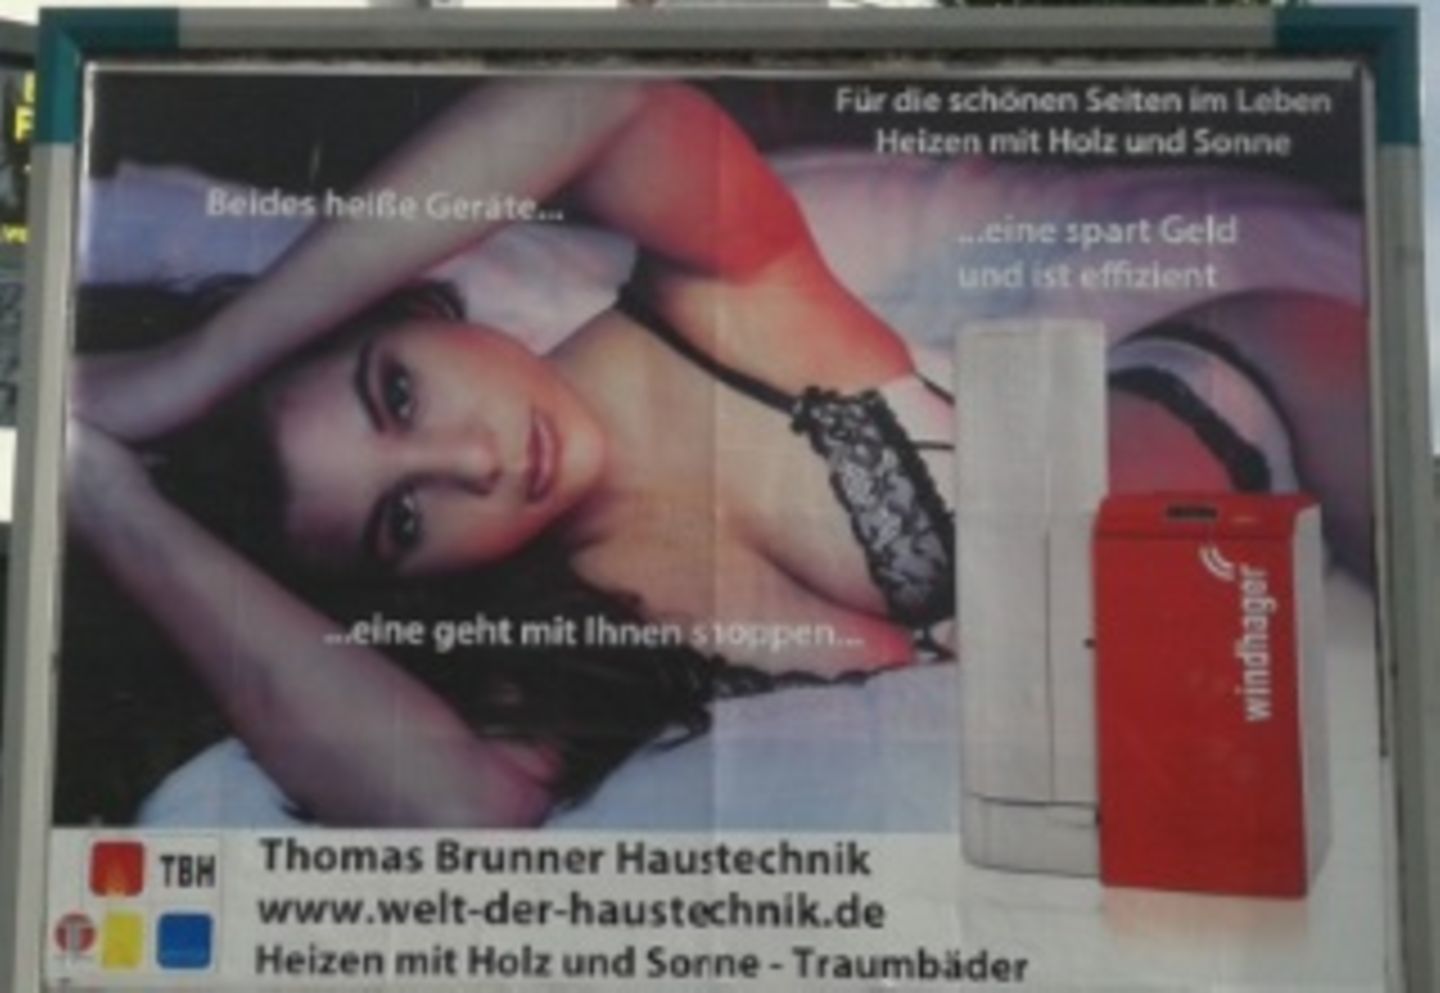 Und noch ein Schenkelklopfer aus Bayern: Das Unternehmen "Brunner Haustechnik" bewirbt eine Heizungsanlage mit einer halbnackten Frau im Bett und dem Slogan: "Beides heiße Geräte ... eine geht mit Ihnen shoppen ... eine spart Geld und ist effizient." Gröl!